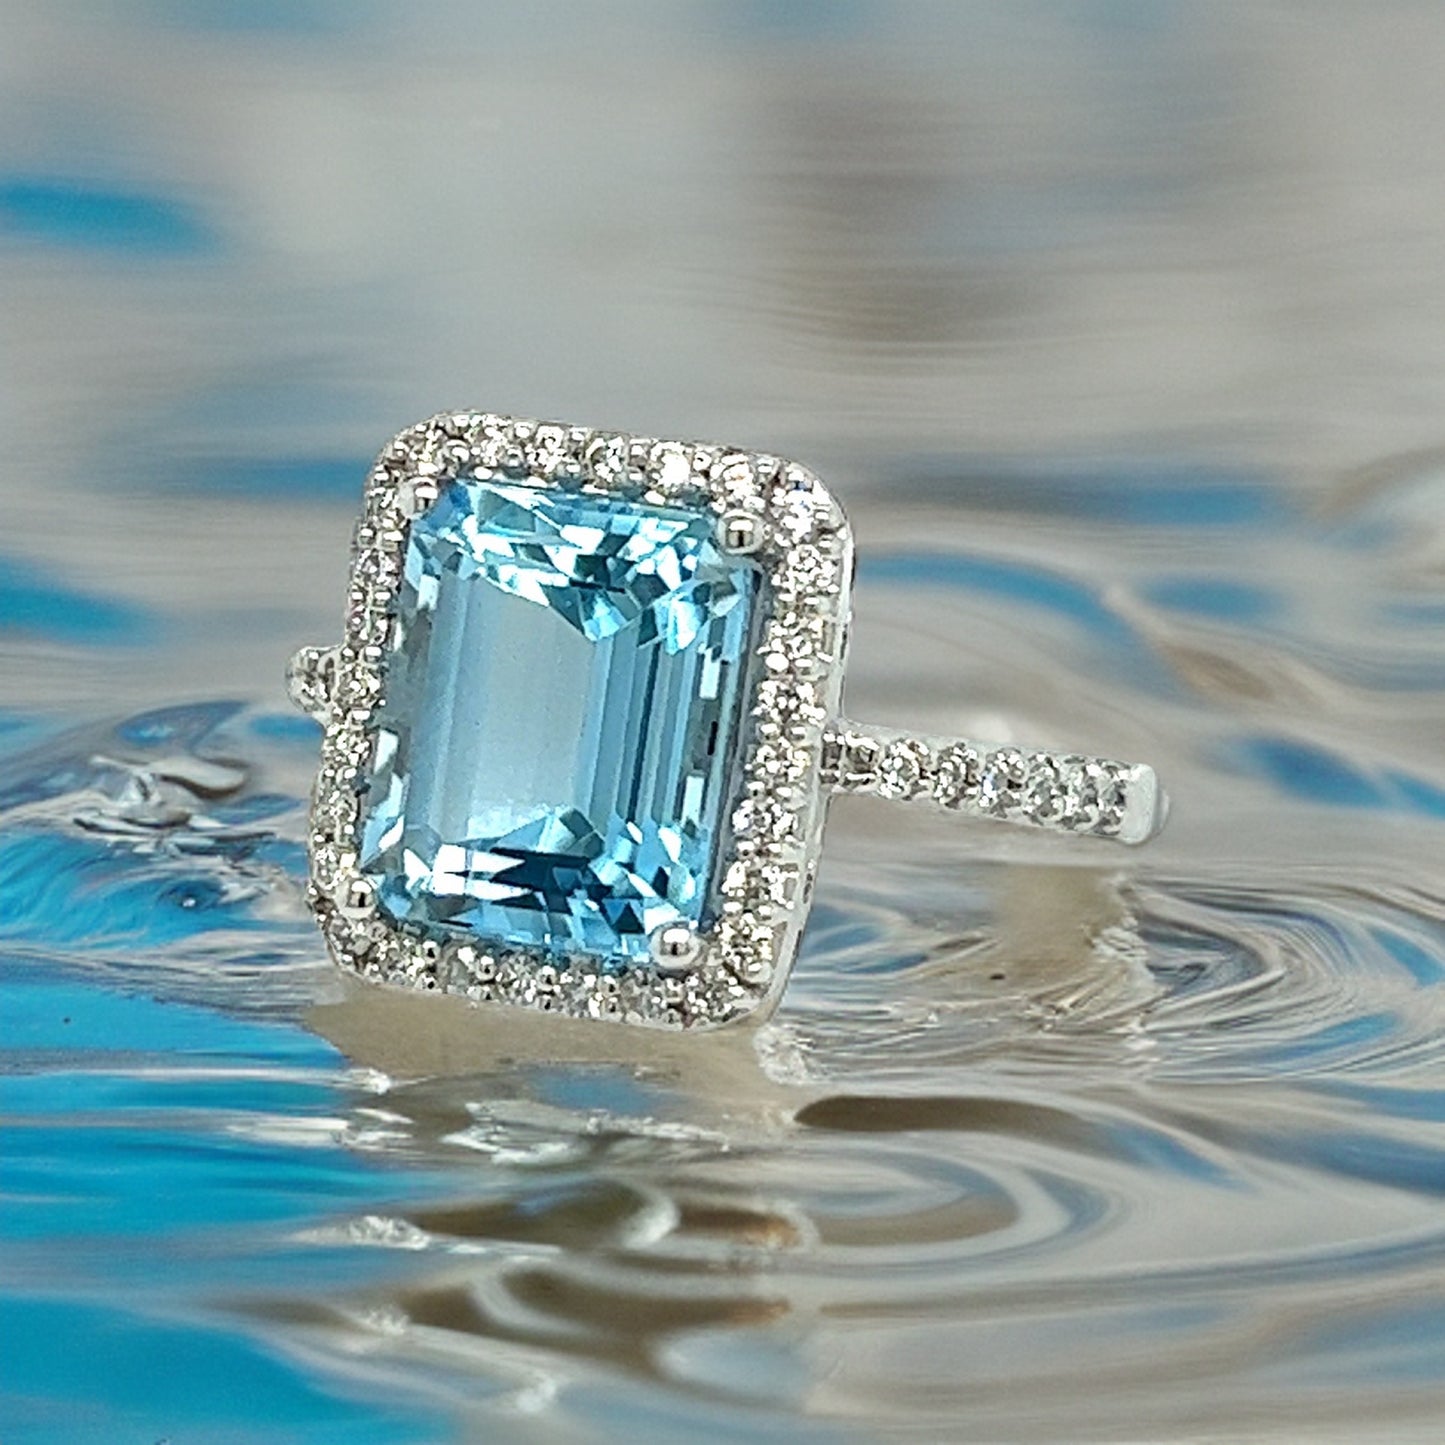 Natural Topaz Diamond Ring 6.5 14k W Gold 5.1 TCW Certified $3,950 308482 - Certified Fine Jewelry